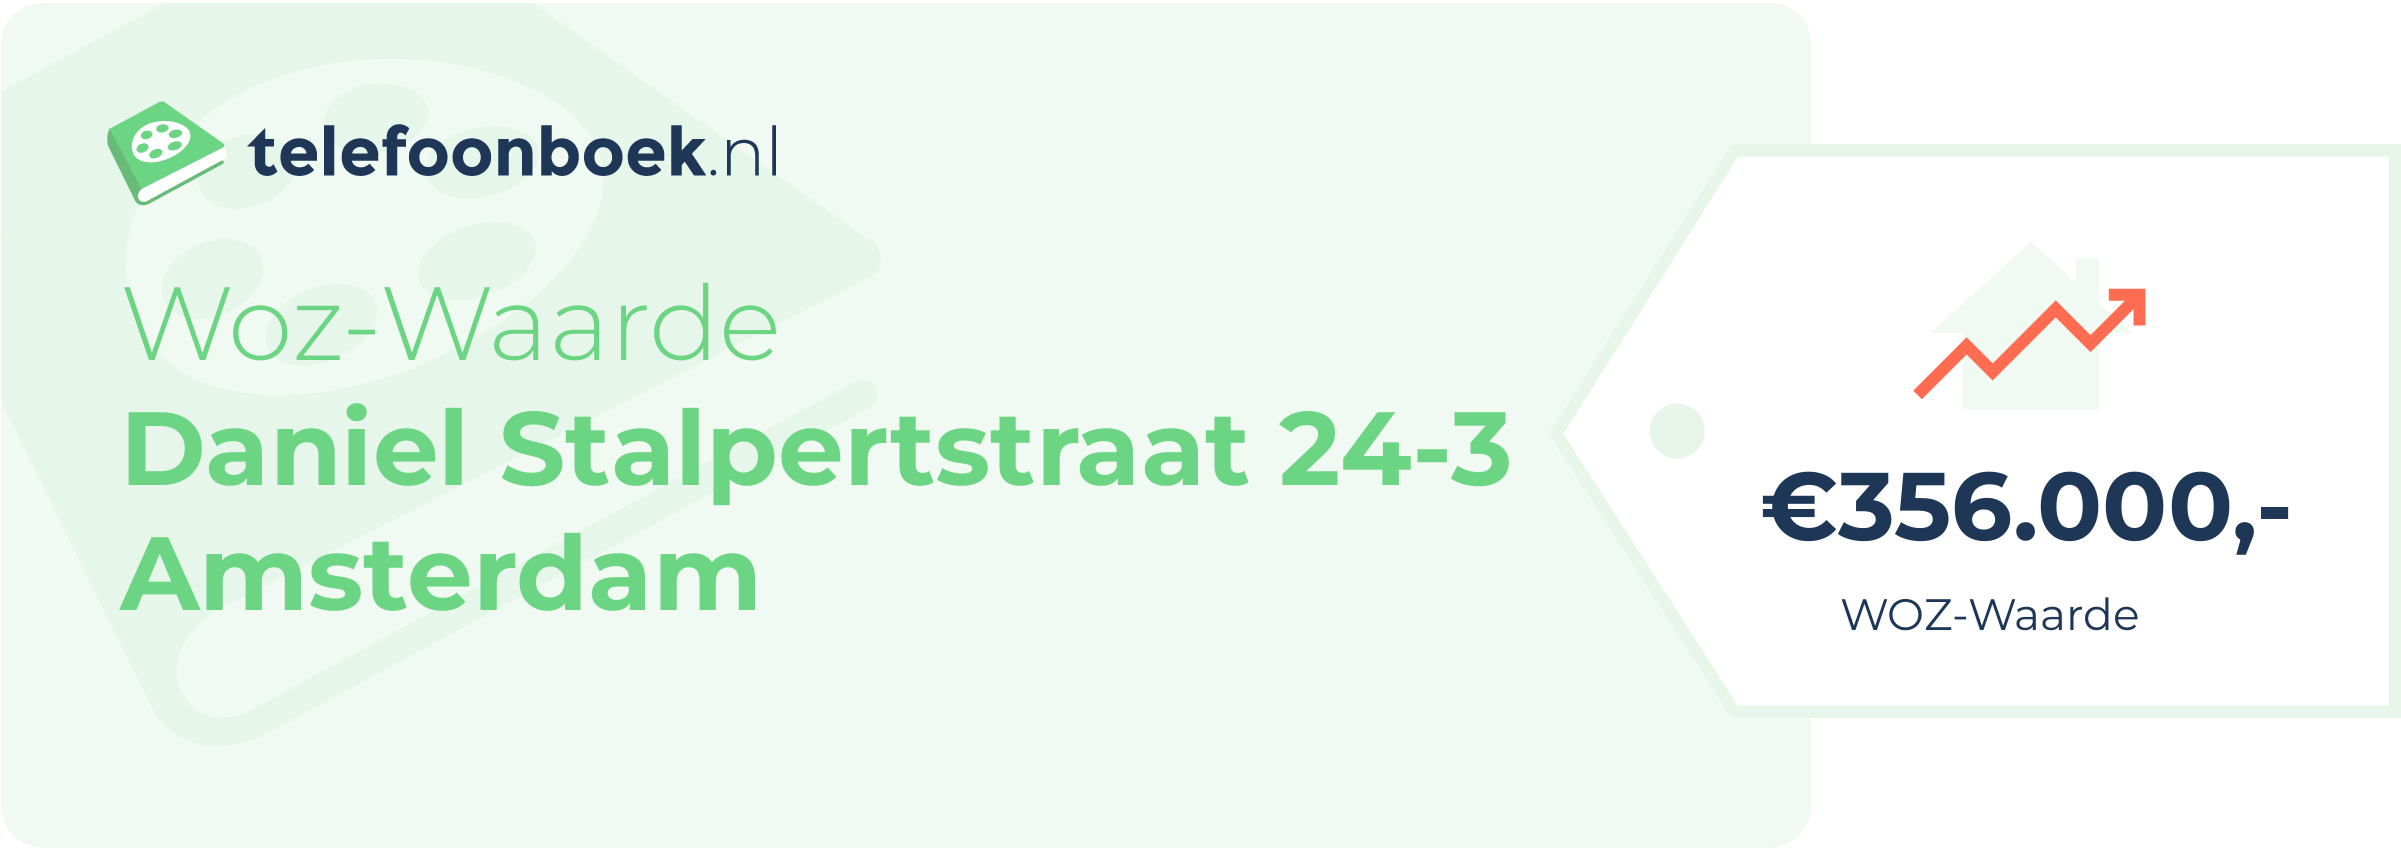 WOZ-waarde Daniel Stalpertstraat 24-3 Amsterdam